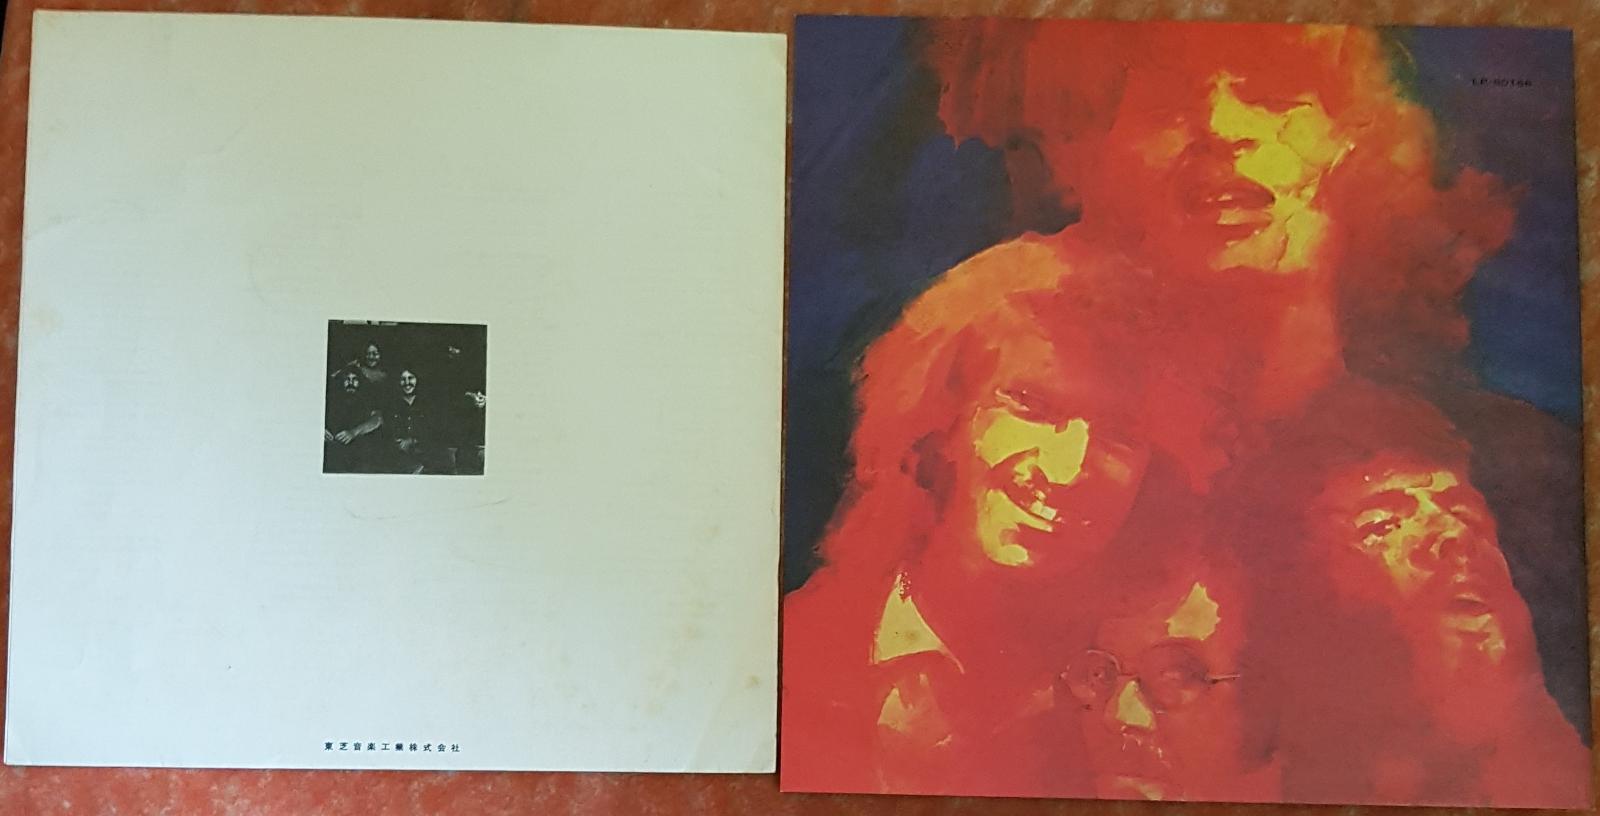 Creedence Clearwater Revival – Pendulum 1971 - LP / Vinylové desky